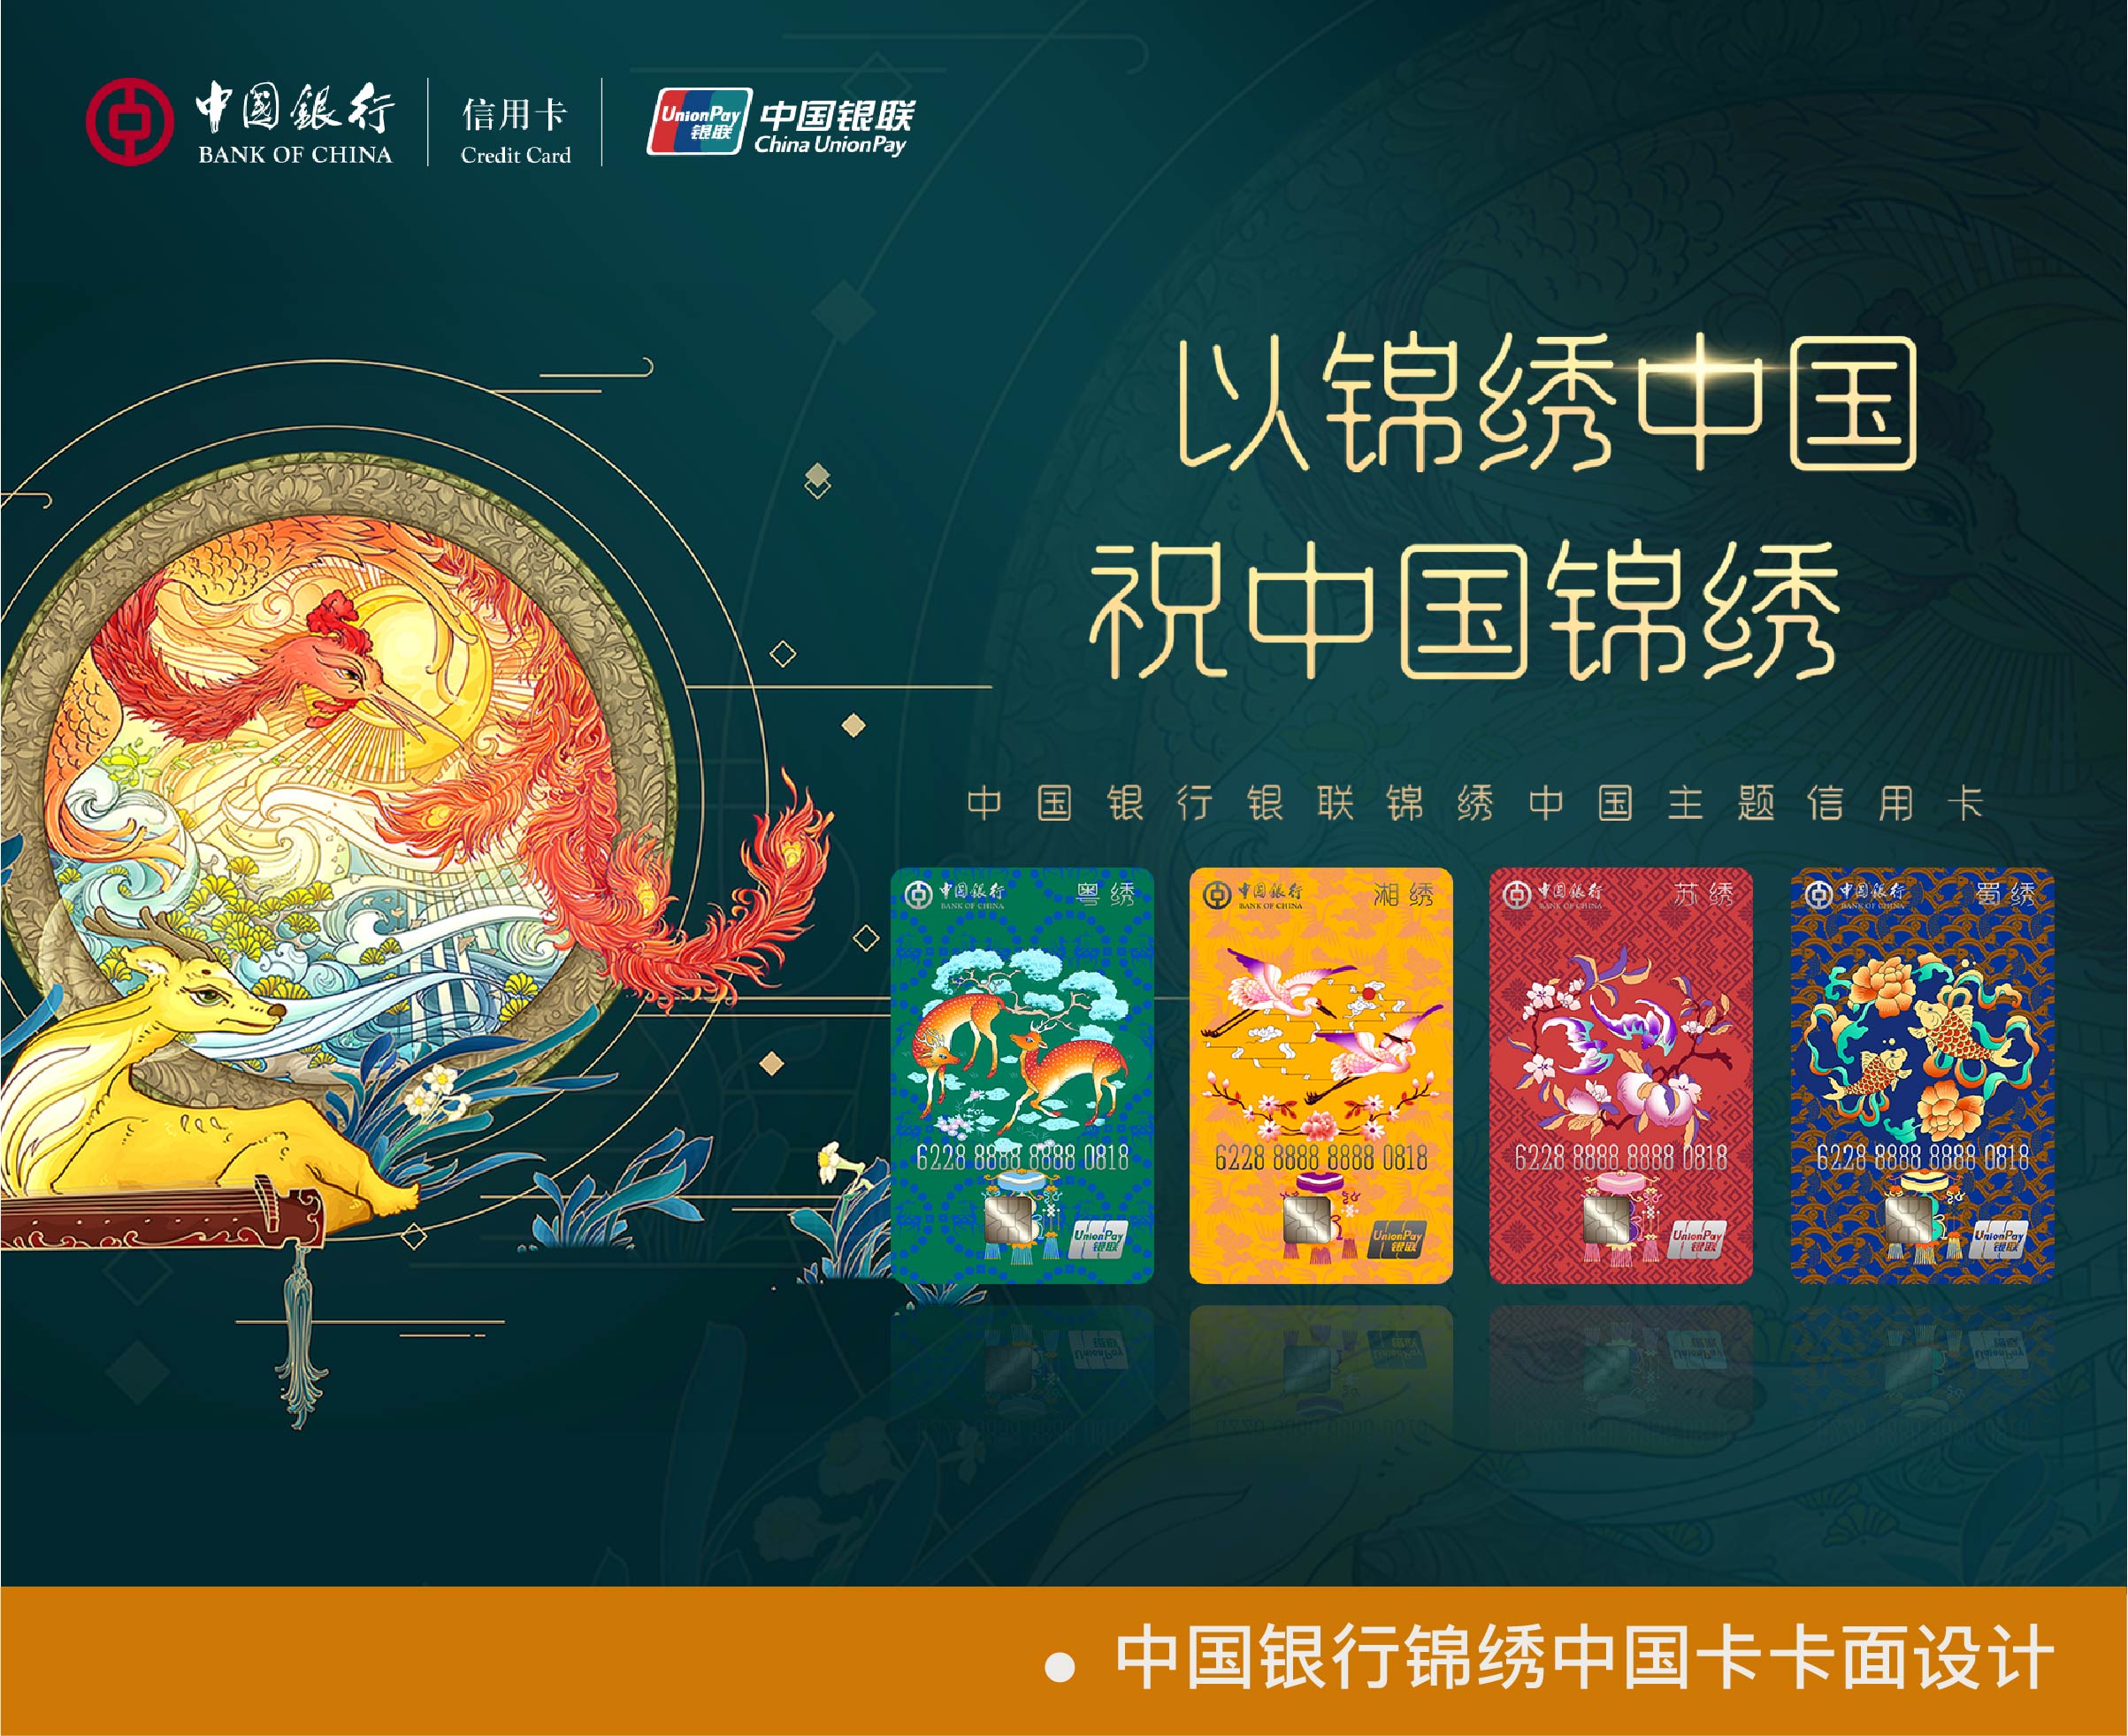 中国银行锦绣中国卡卡面设计